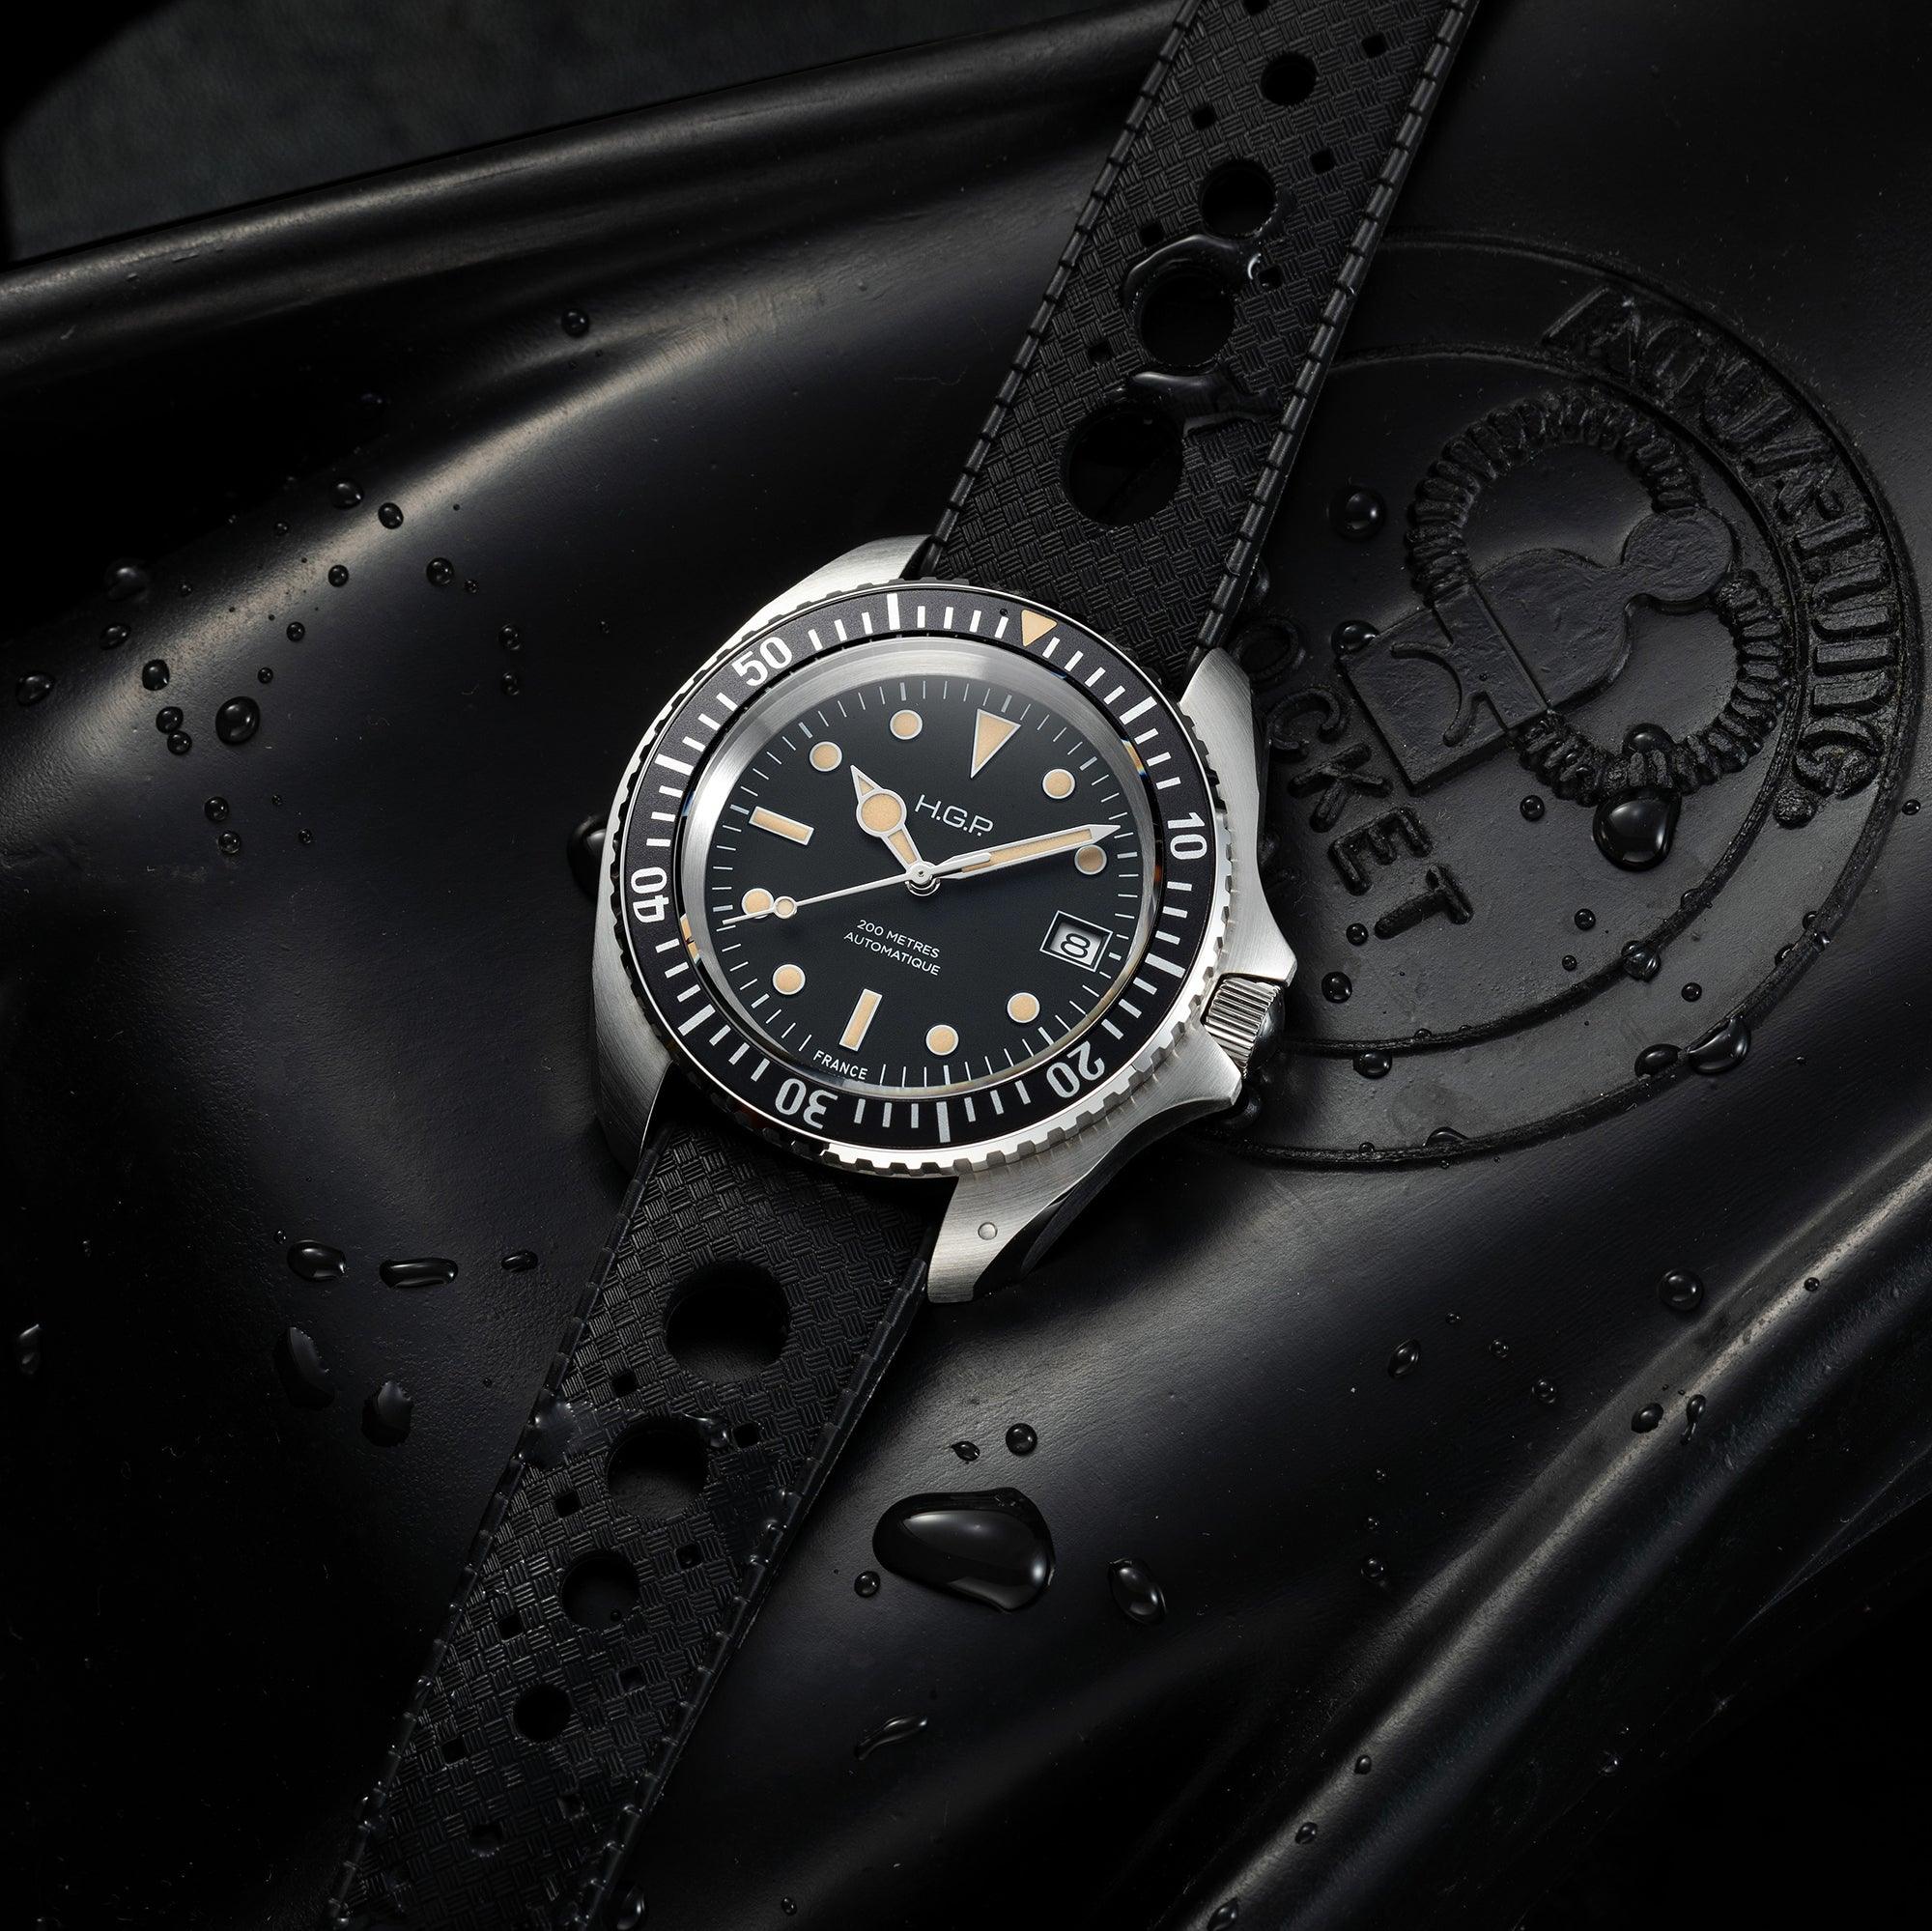 Diver 200M Automatic Vintage Diving Watch - HGP - Dive Watches